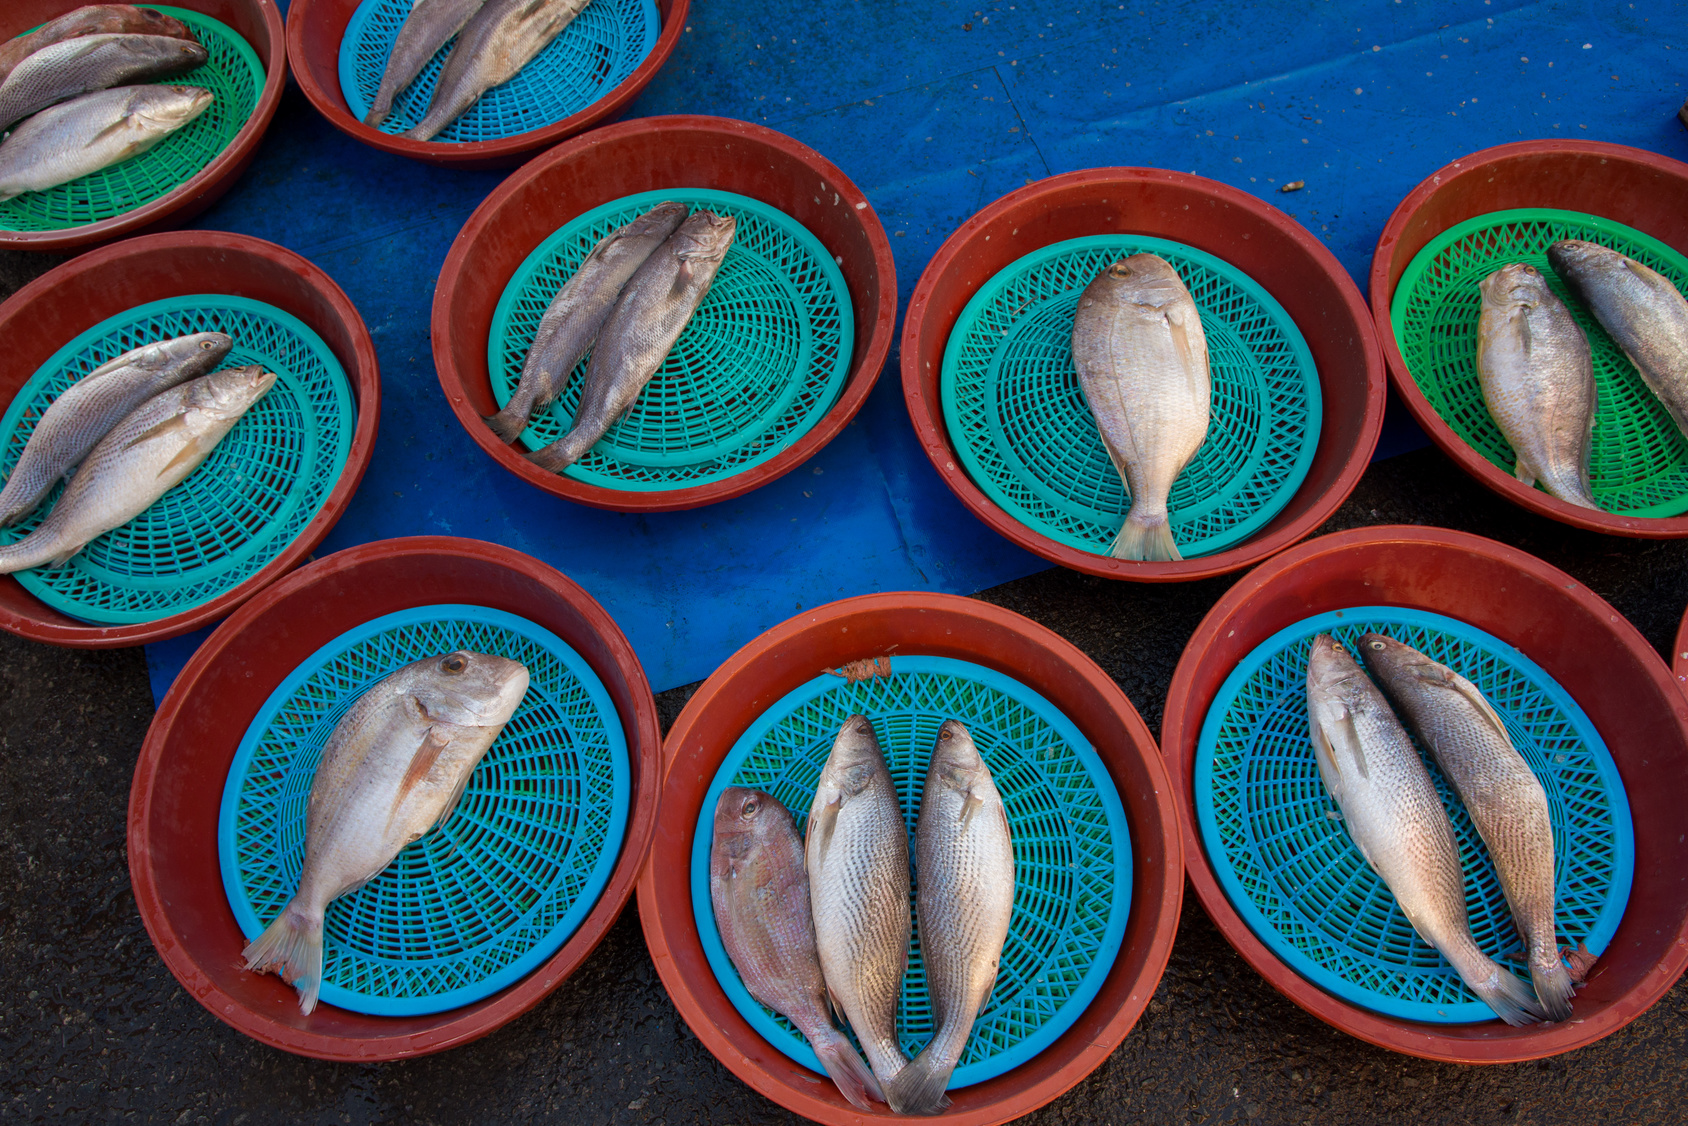 poisson marché de gukje en coree du sud